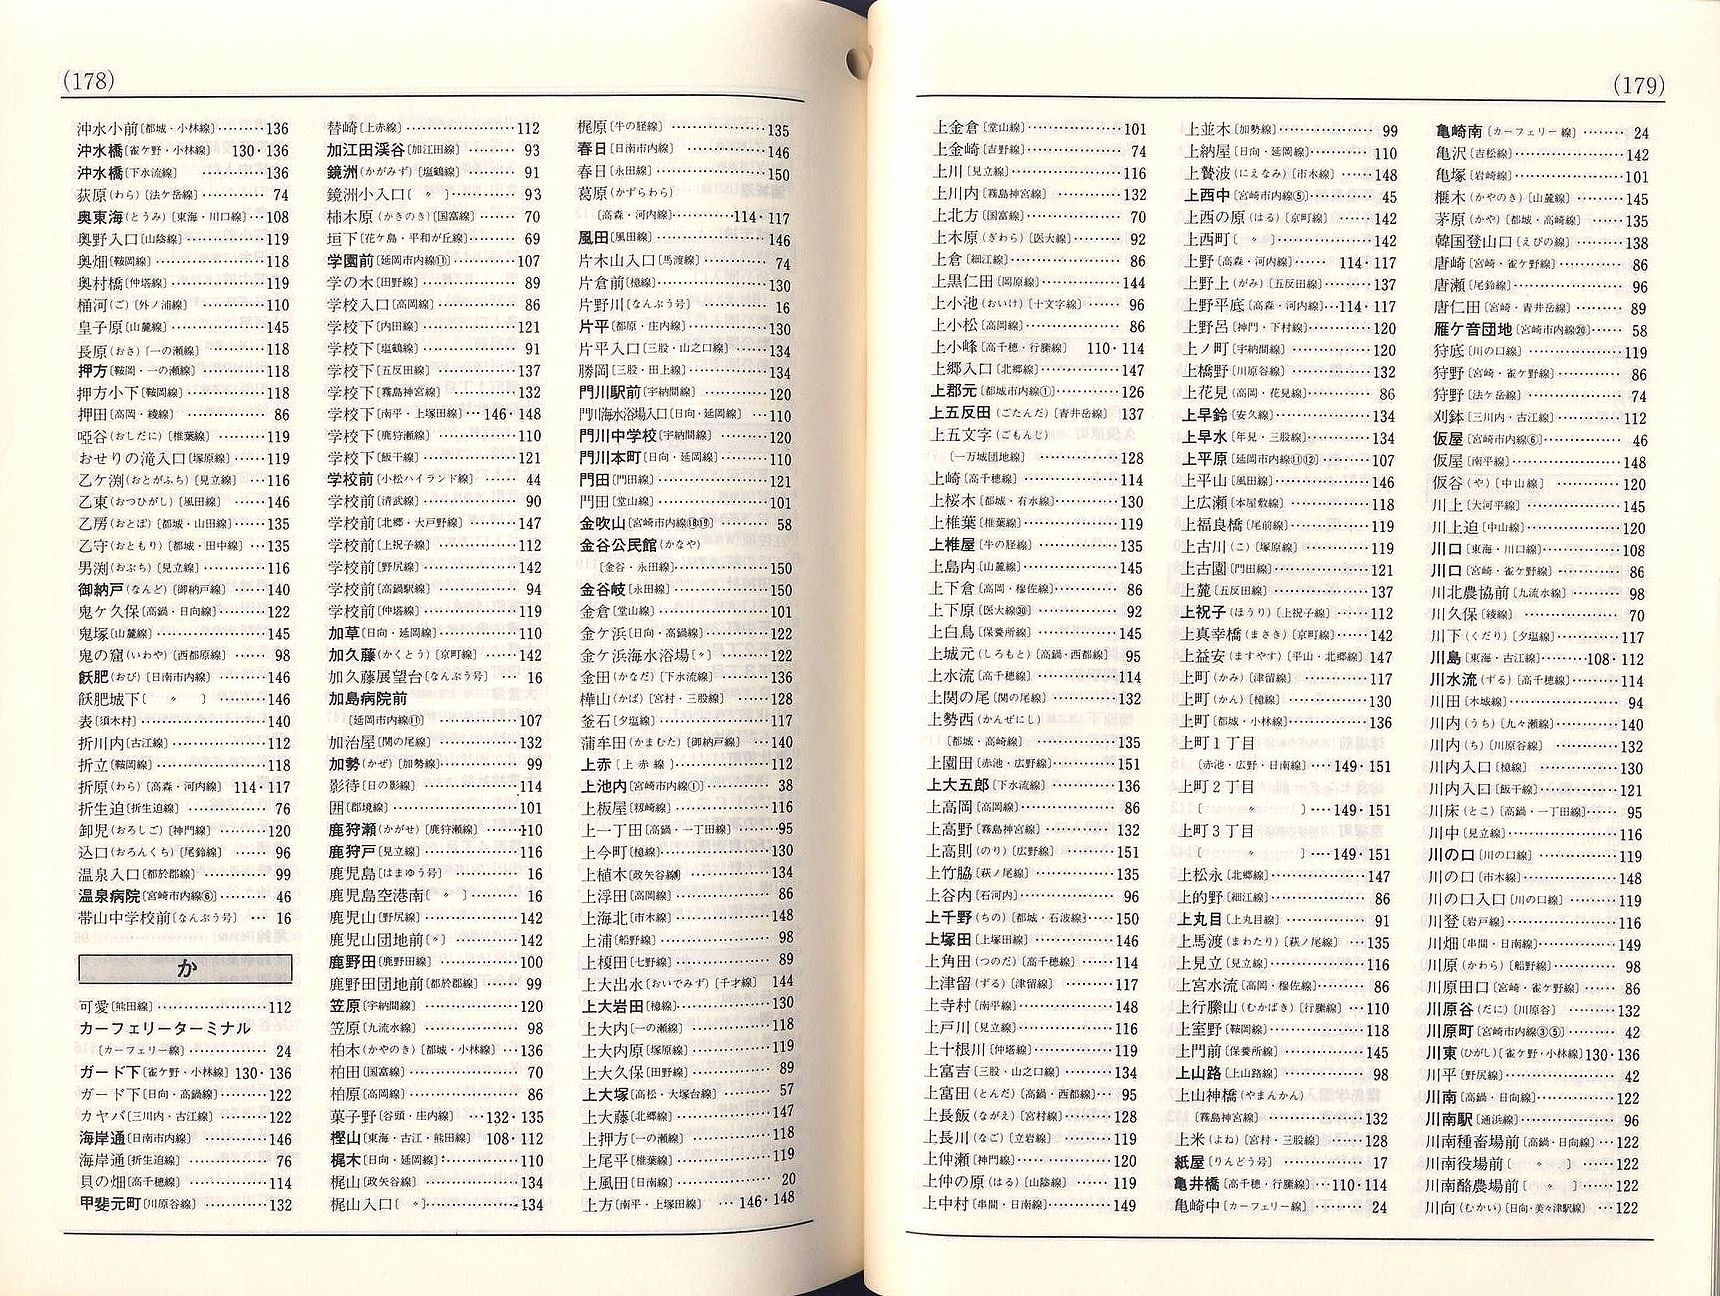 1984-10-01改正_宮崎交通_冊子時刻表_178